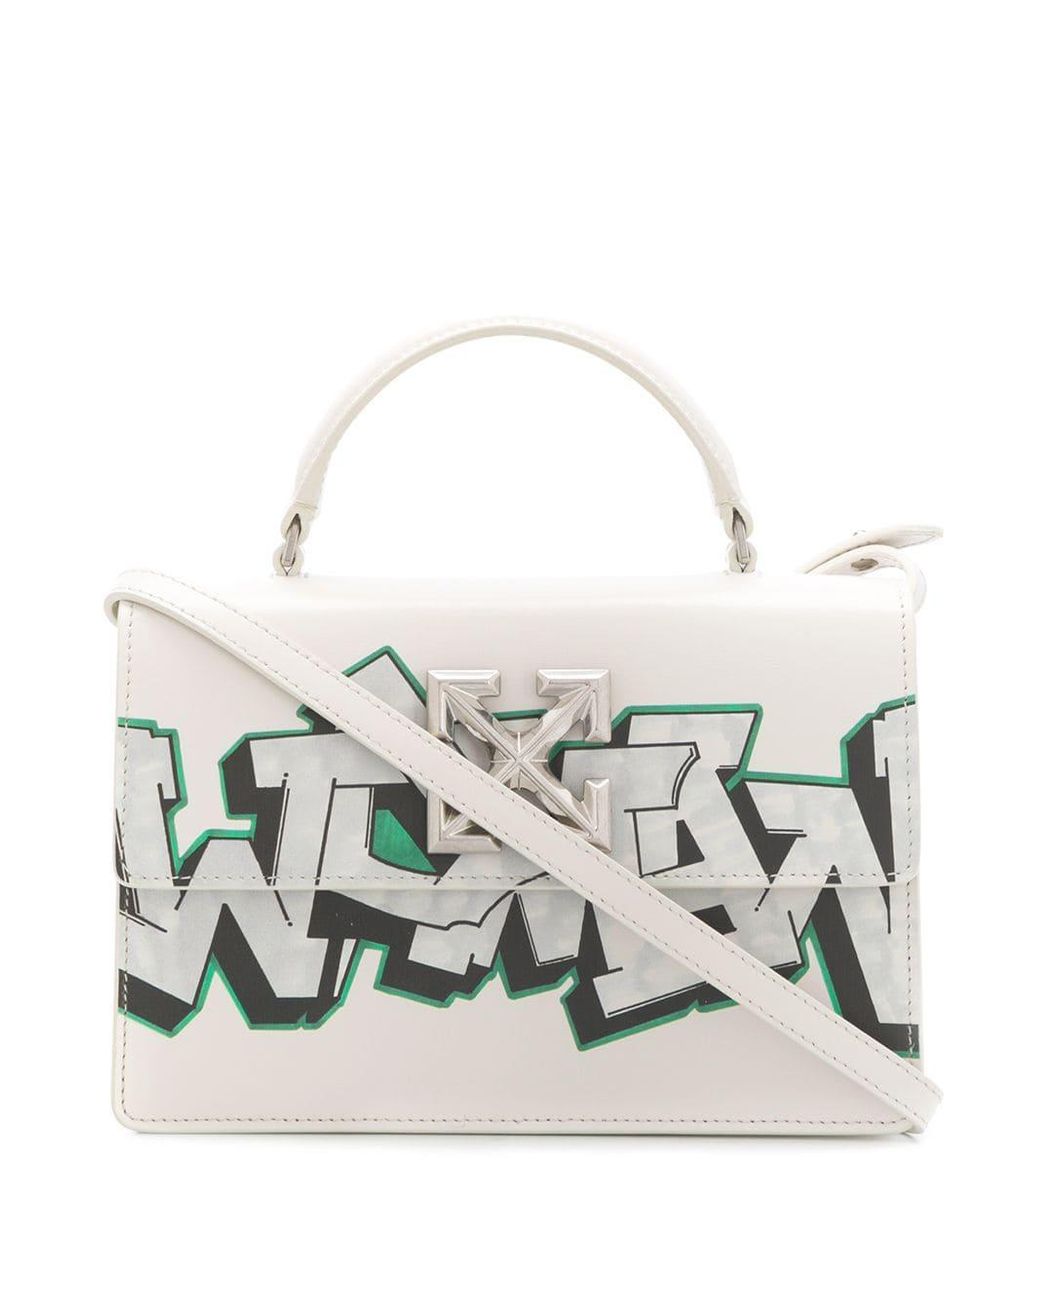 Off-White c/o Virgil Abloh Jitney Graffiti Bag in White